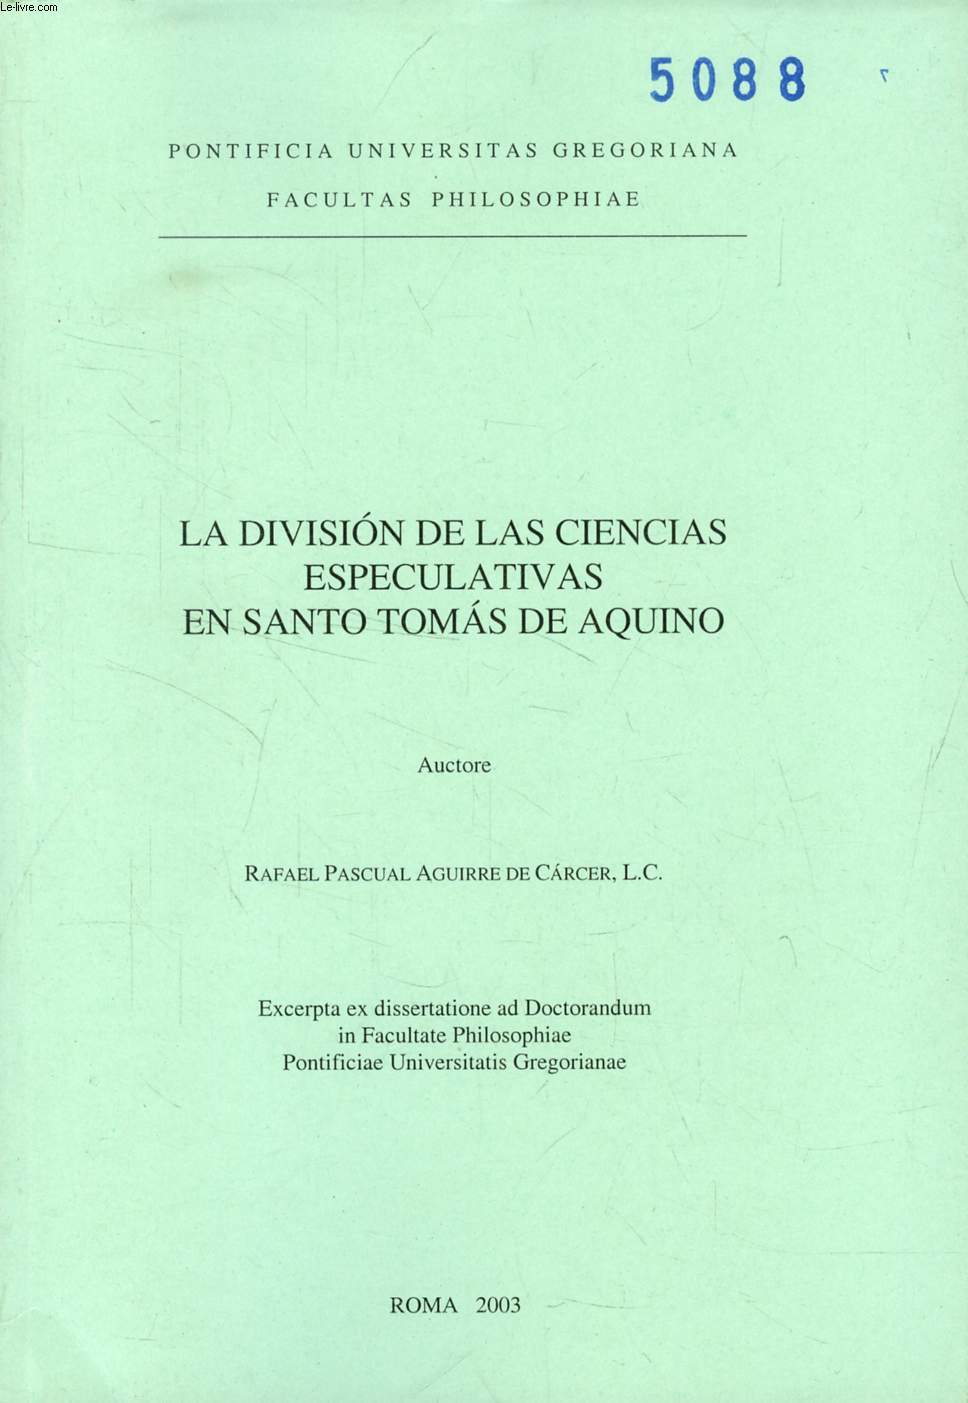 LA DIVISION DE LAS CIENCIAS ESPECULATIVAS EN SANTO TOMAS DE AQUINO (EXCERPTA EX DISSERTATIONE)